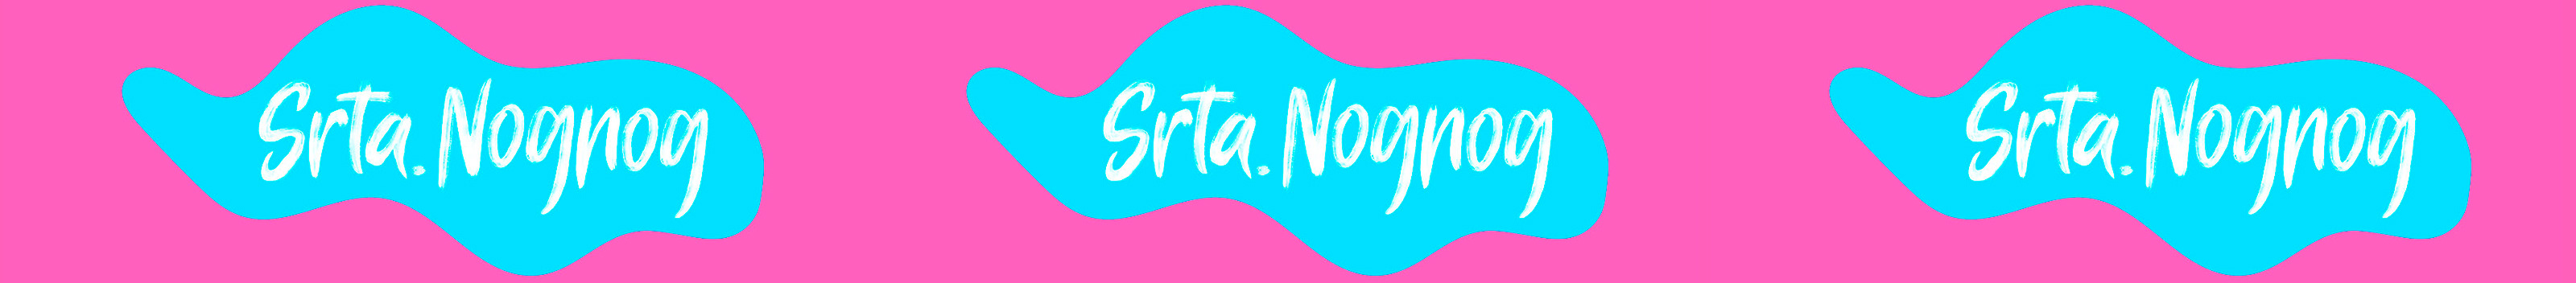 Srta. Nognog's profile banner